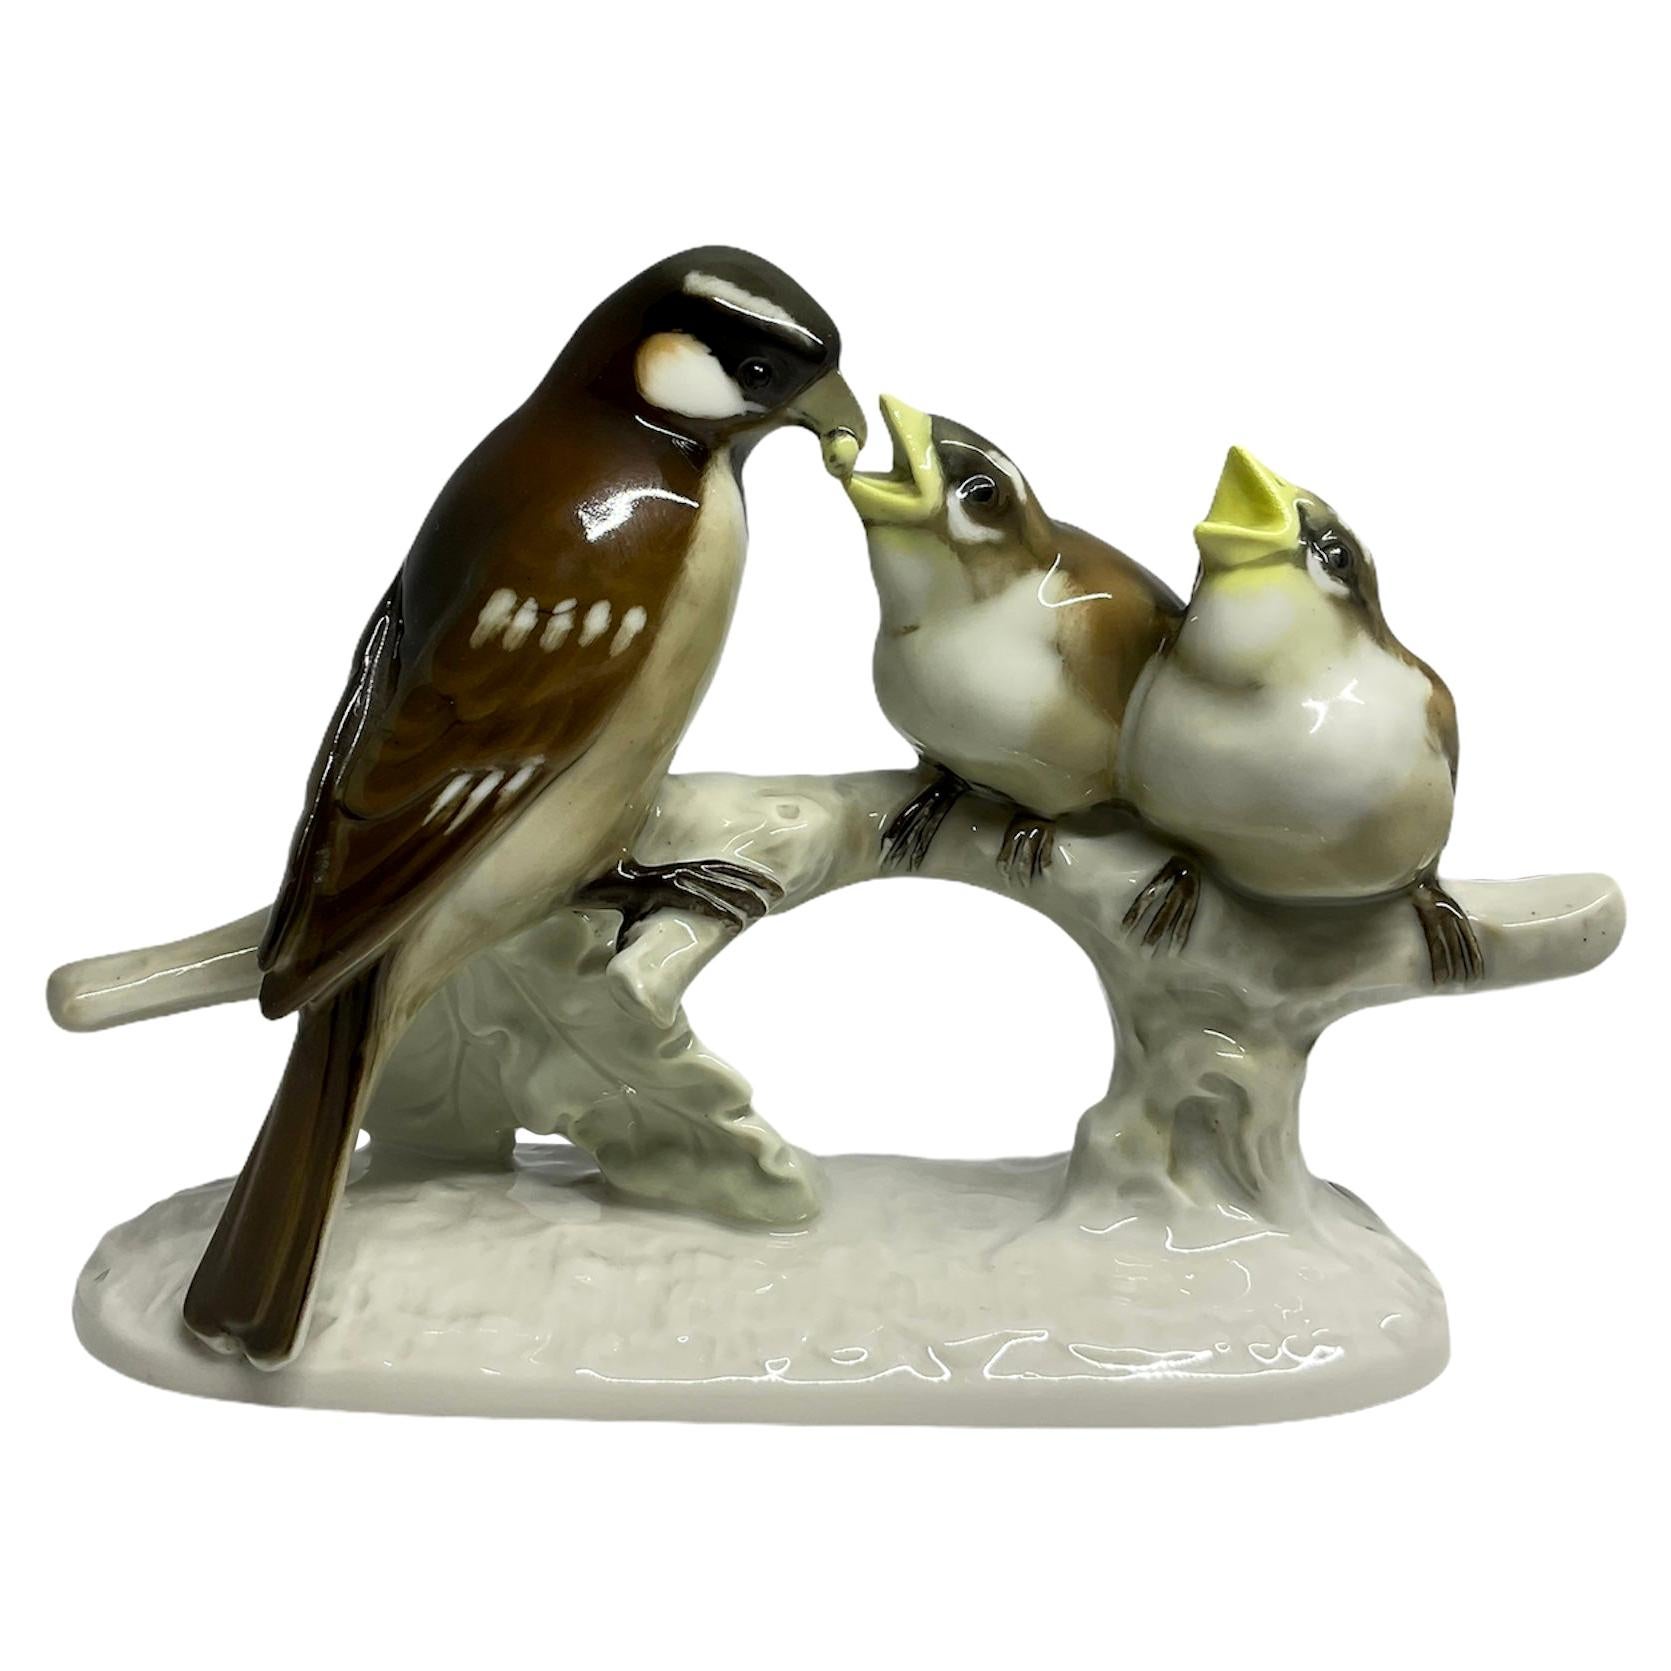 Sculpture de groupe en porcelaine peinte à la main de Lorenz Hutschenreuther représentant des moineaux et des oiseaux